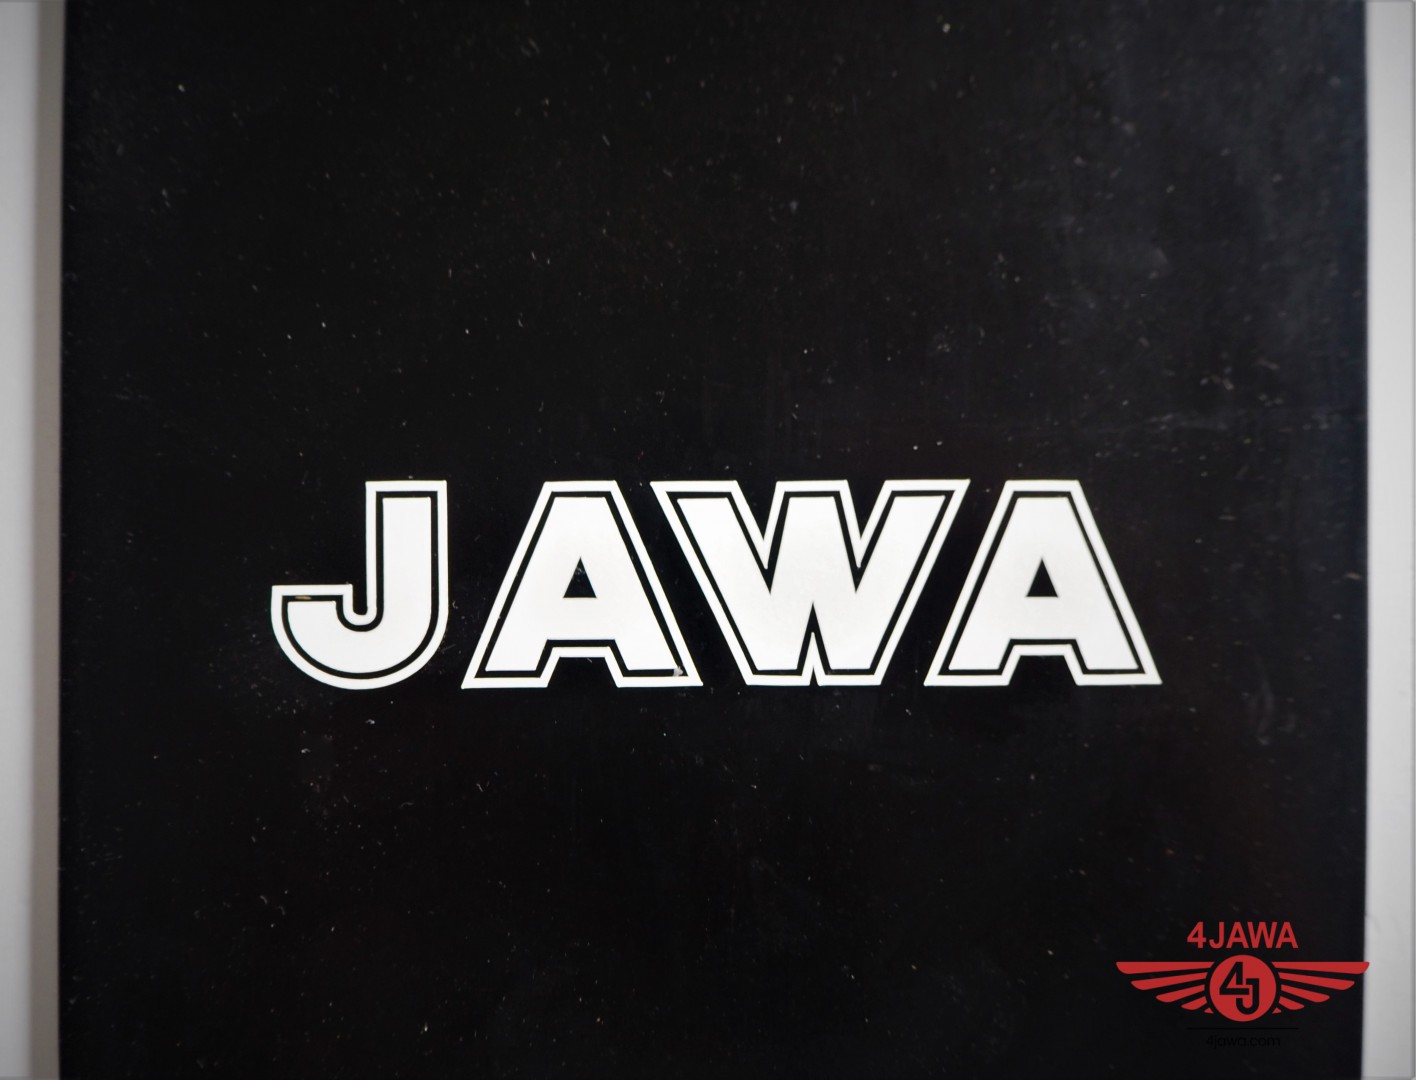 Mud flap logo  JAWA 4Jawa  com